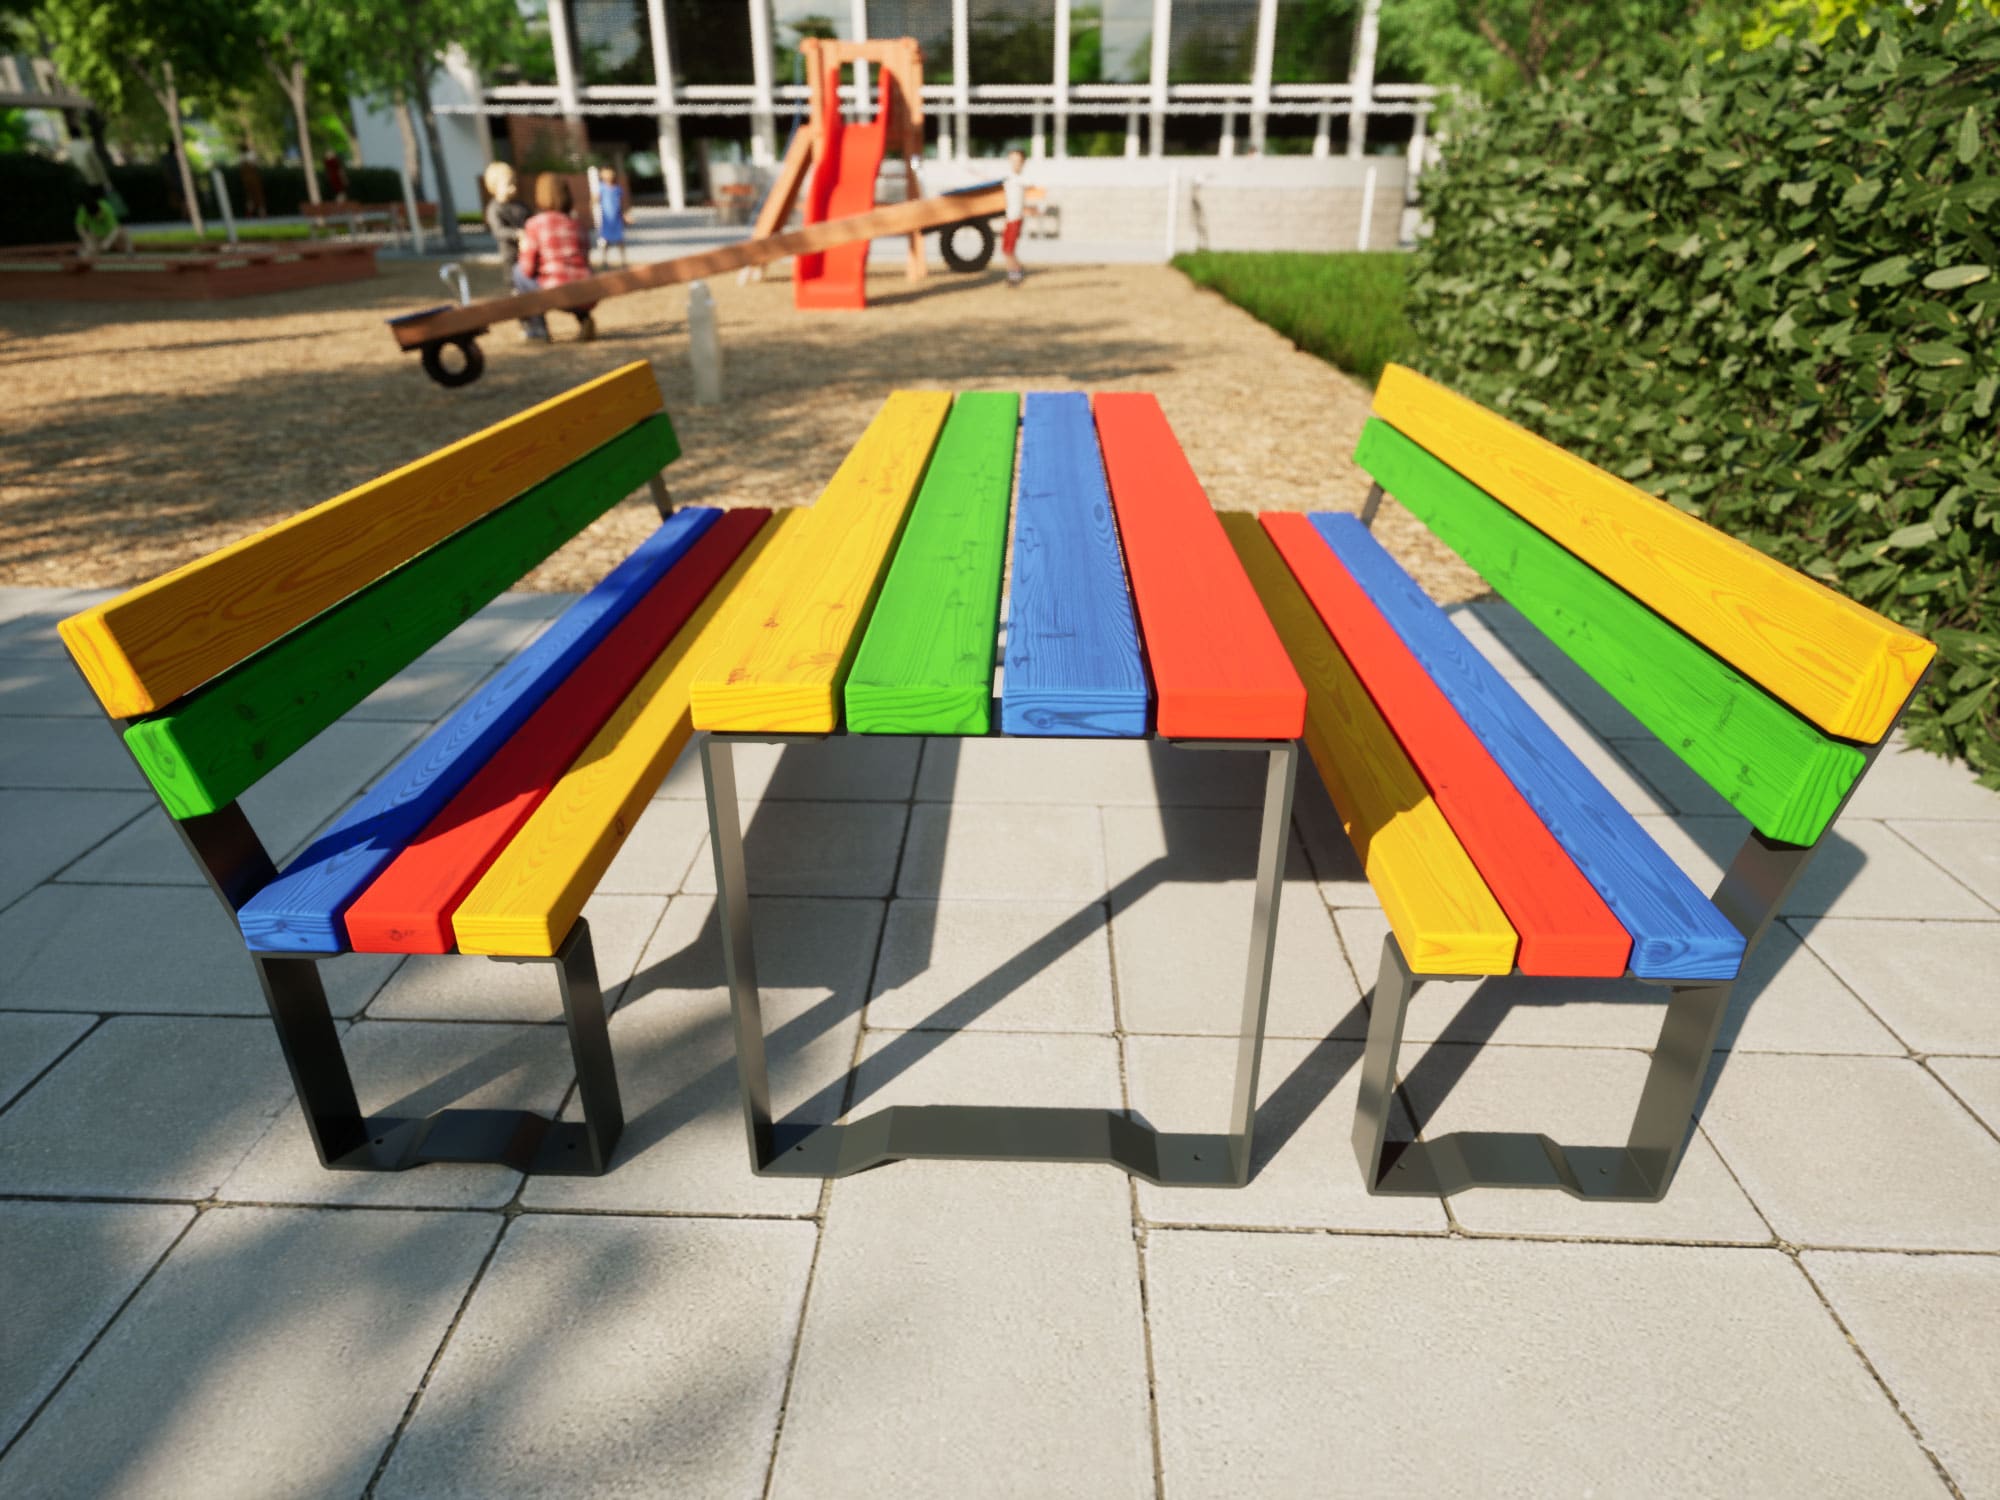 Bänke und Tische in bunten Farben und Anthrazit für Kinder am Spielplatz